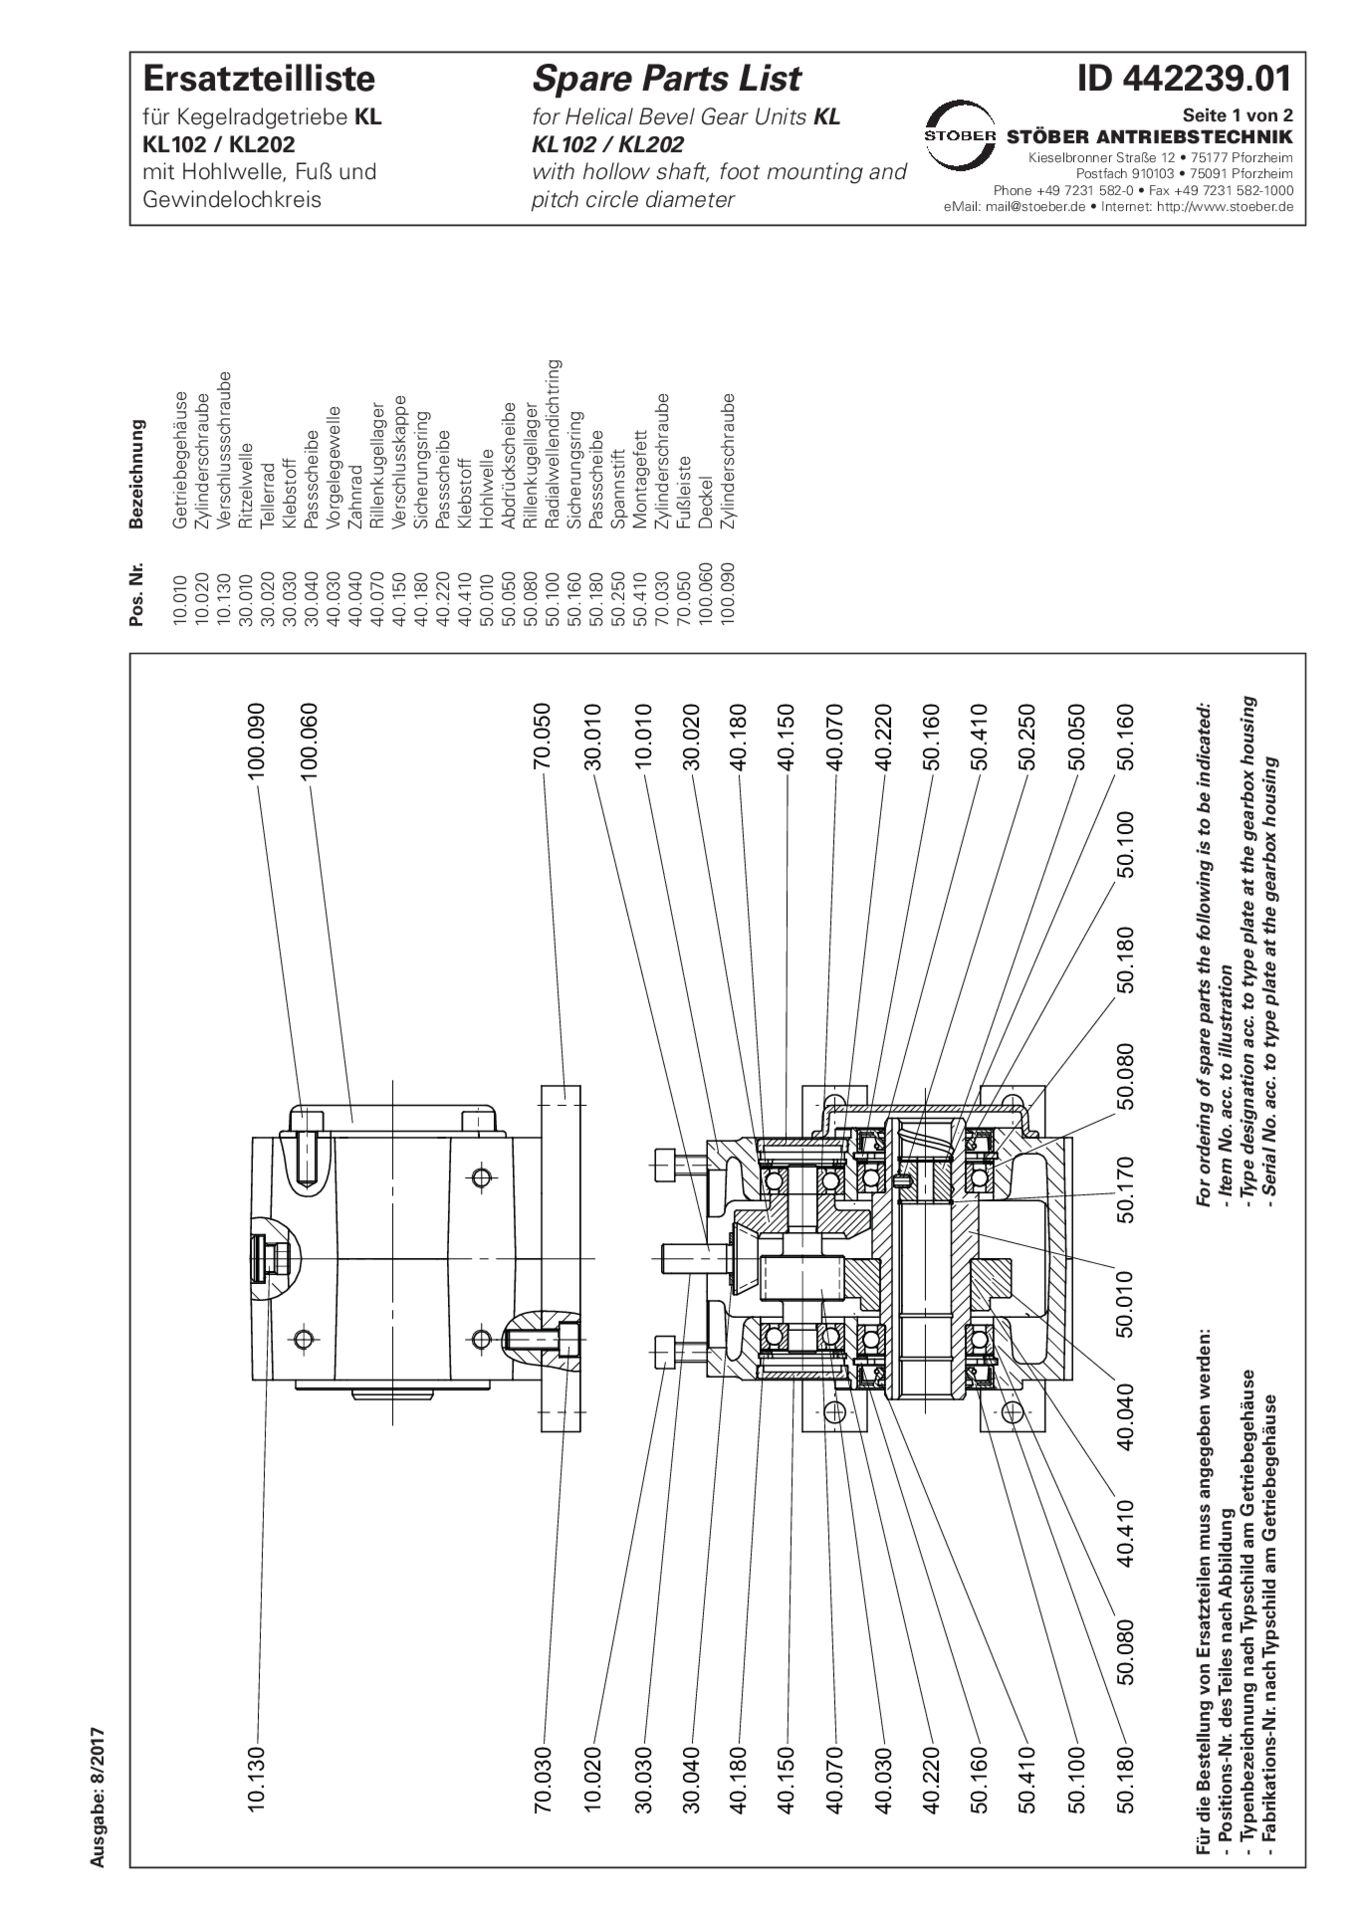 Replacement parts list helical bevel gear units KL102 KL202 AG ANGErsatzteilliste Kegelradgetriebe KL102 KL202 AG ANG